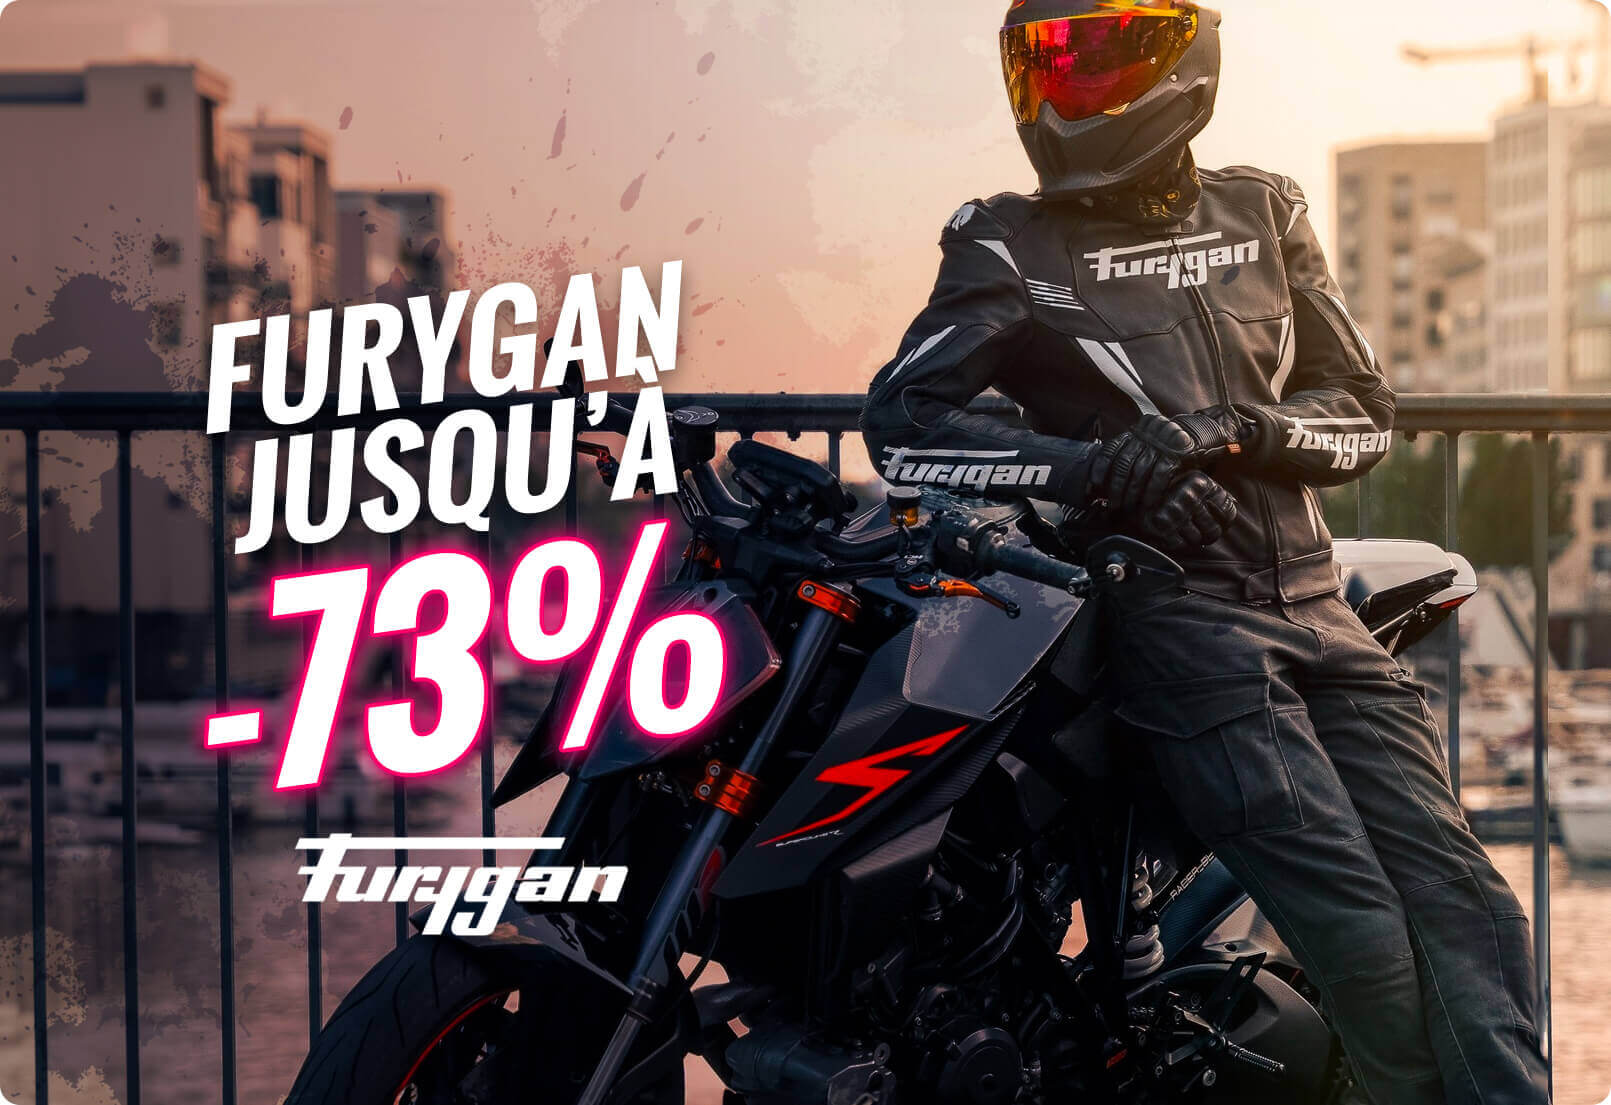 Furygan jusqu'à -73%